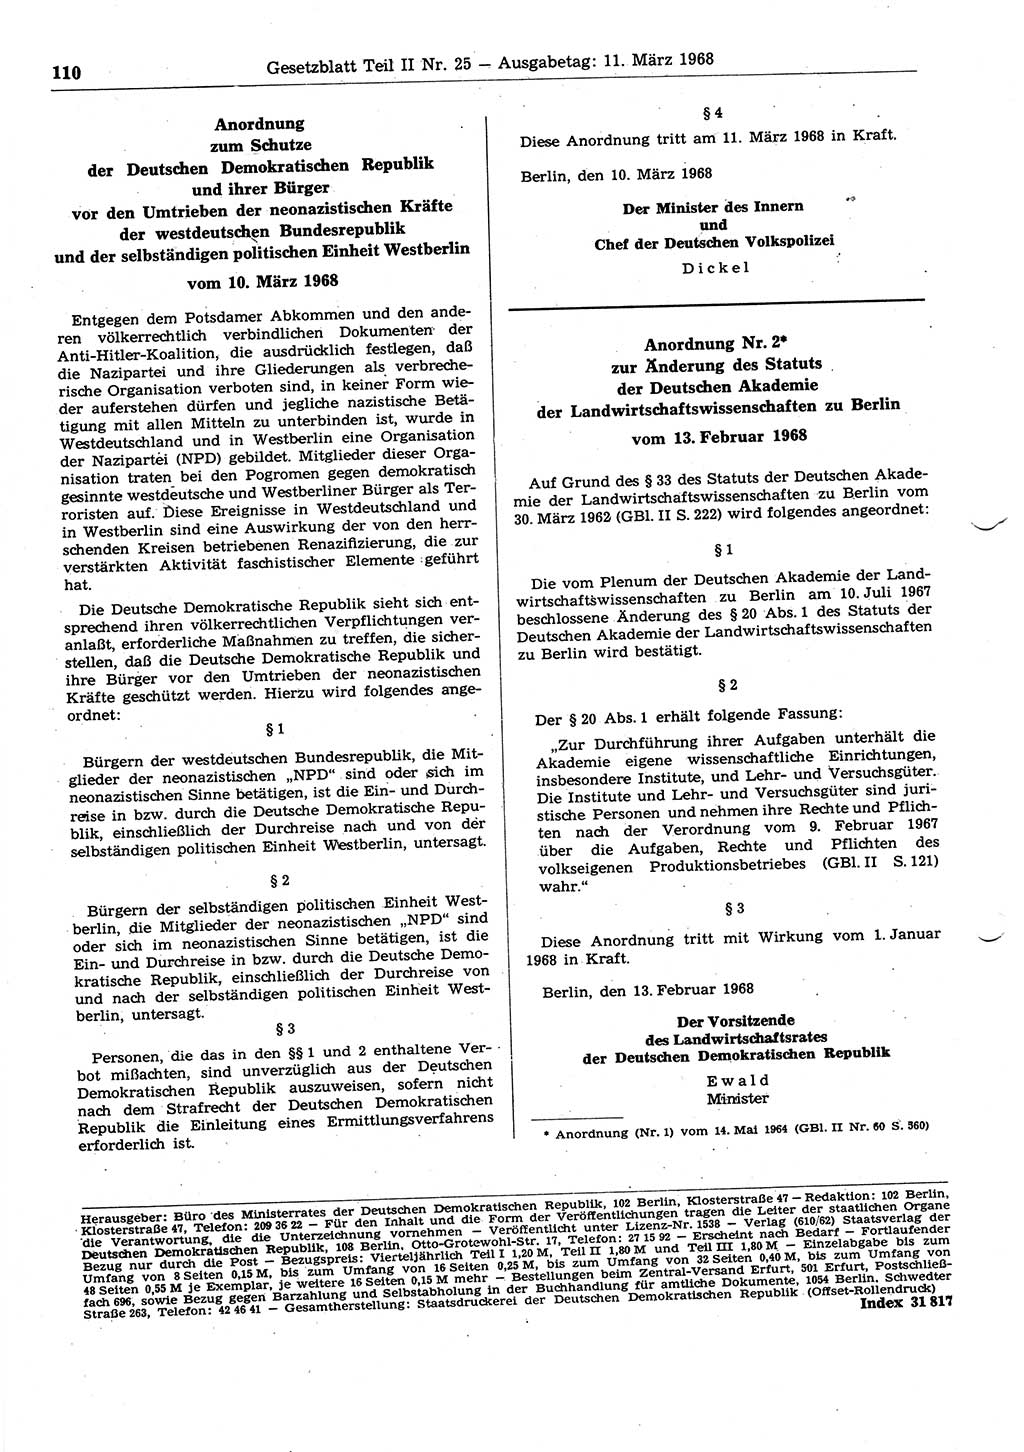 Gesetzblatt (GBl.) der Deutschen Demokratischen Republik (DDR) Teil ⅠⅠ 1968, Seite 110 (GBl. DDR ⅠⅠ 1968, S. 110)